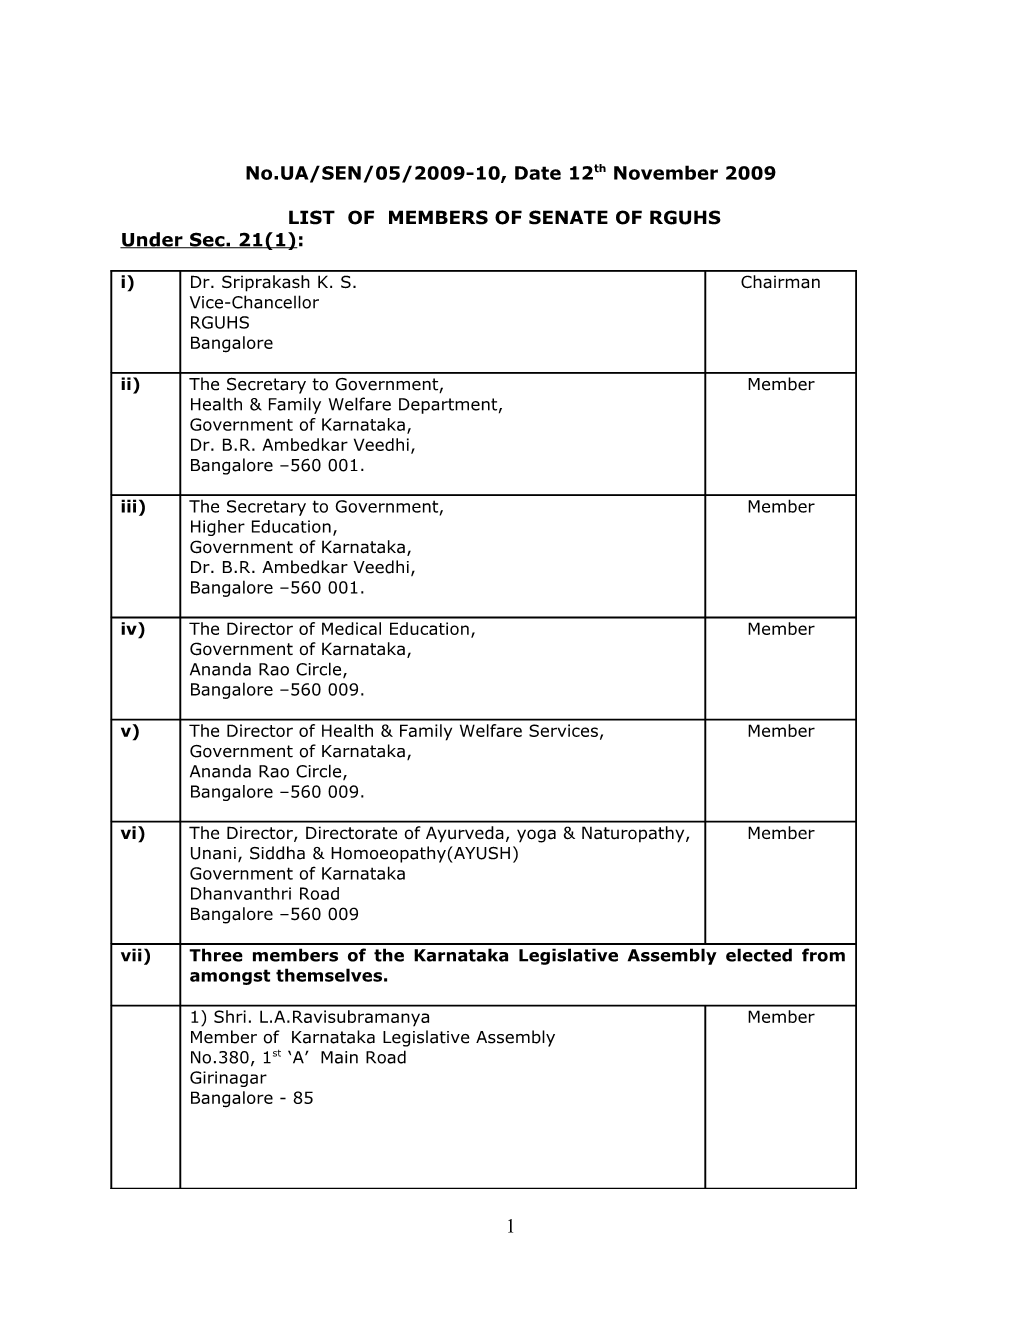 List of Members of Senate of Rguhs